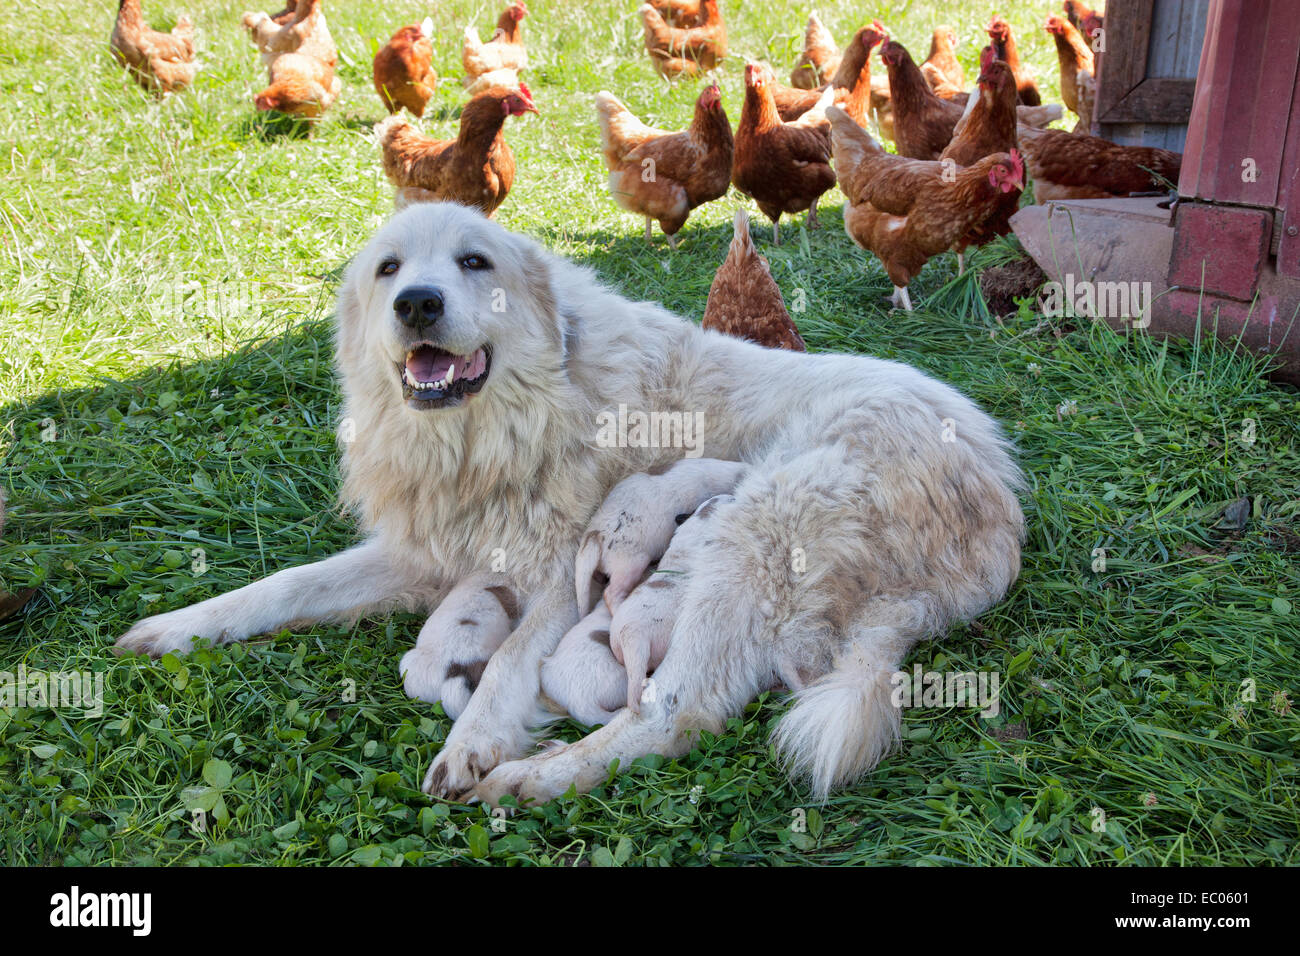 Gran Pirineos madre con una semana de antigüedad cachorros, roaming gratuito Eco pollos orgánicos, intervalo libre. Foto de stock